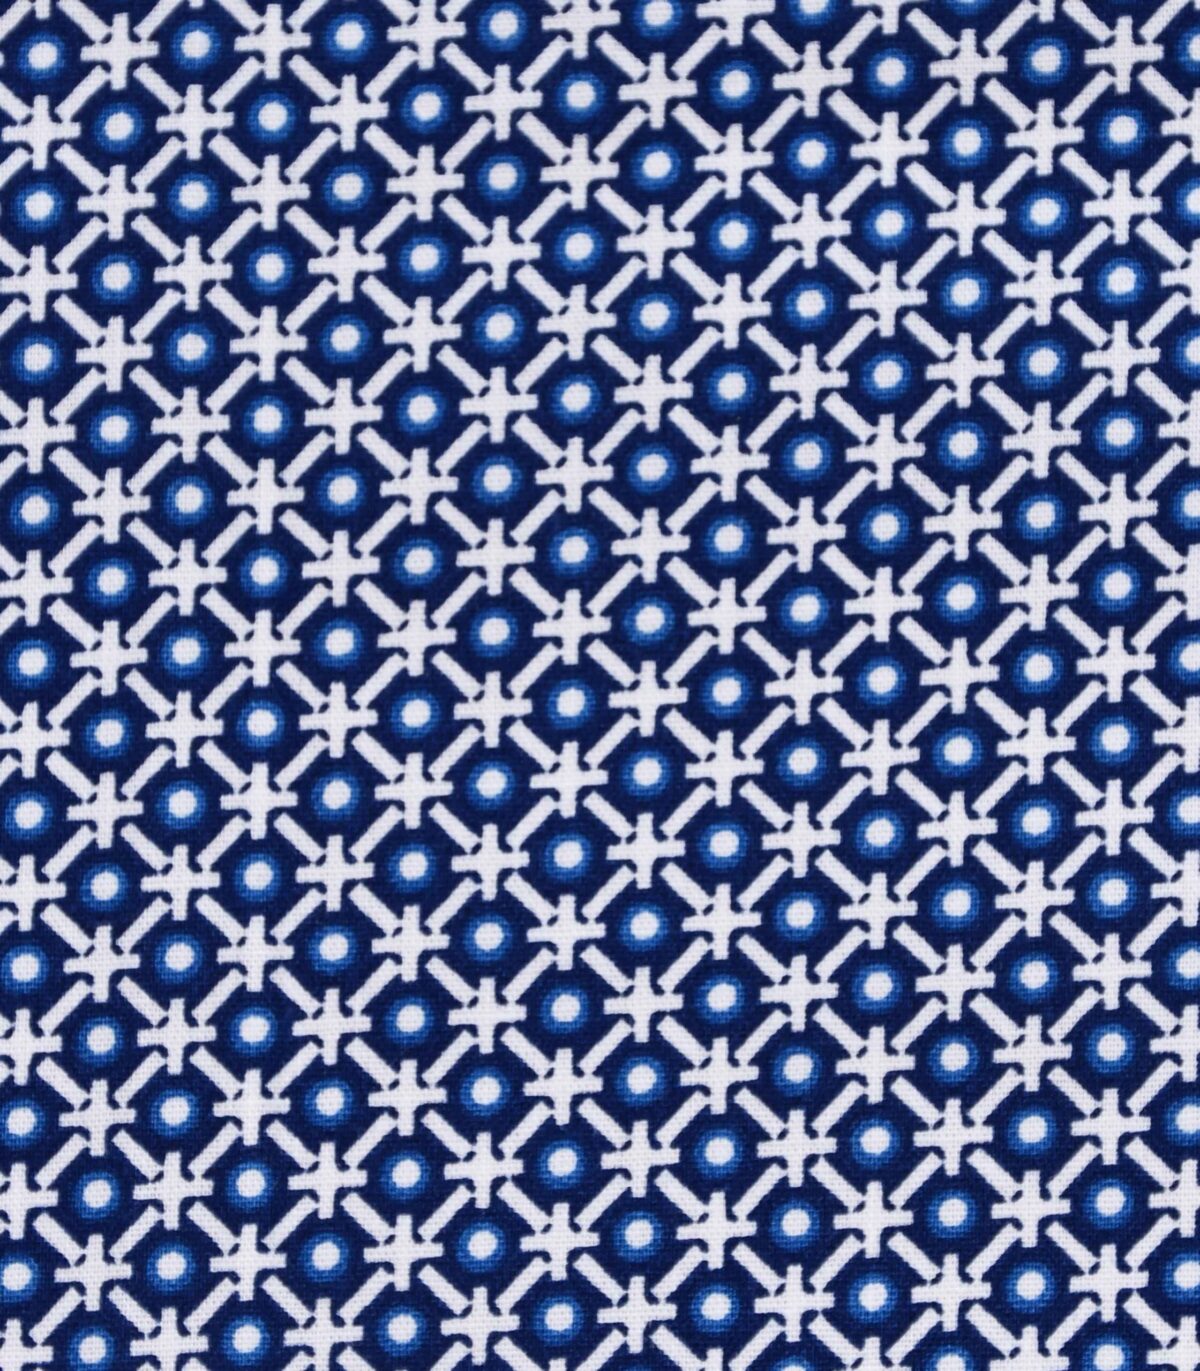 Cotton Geometric Print Fabric